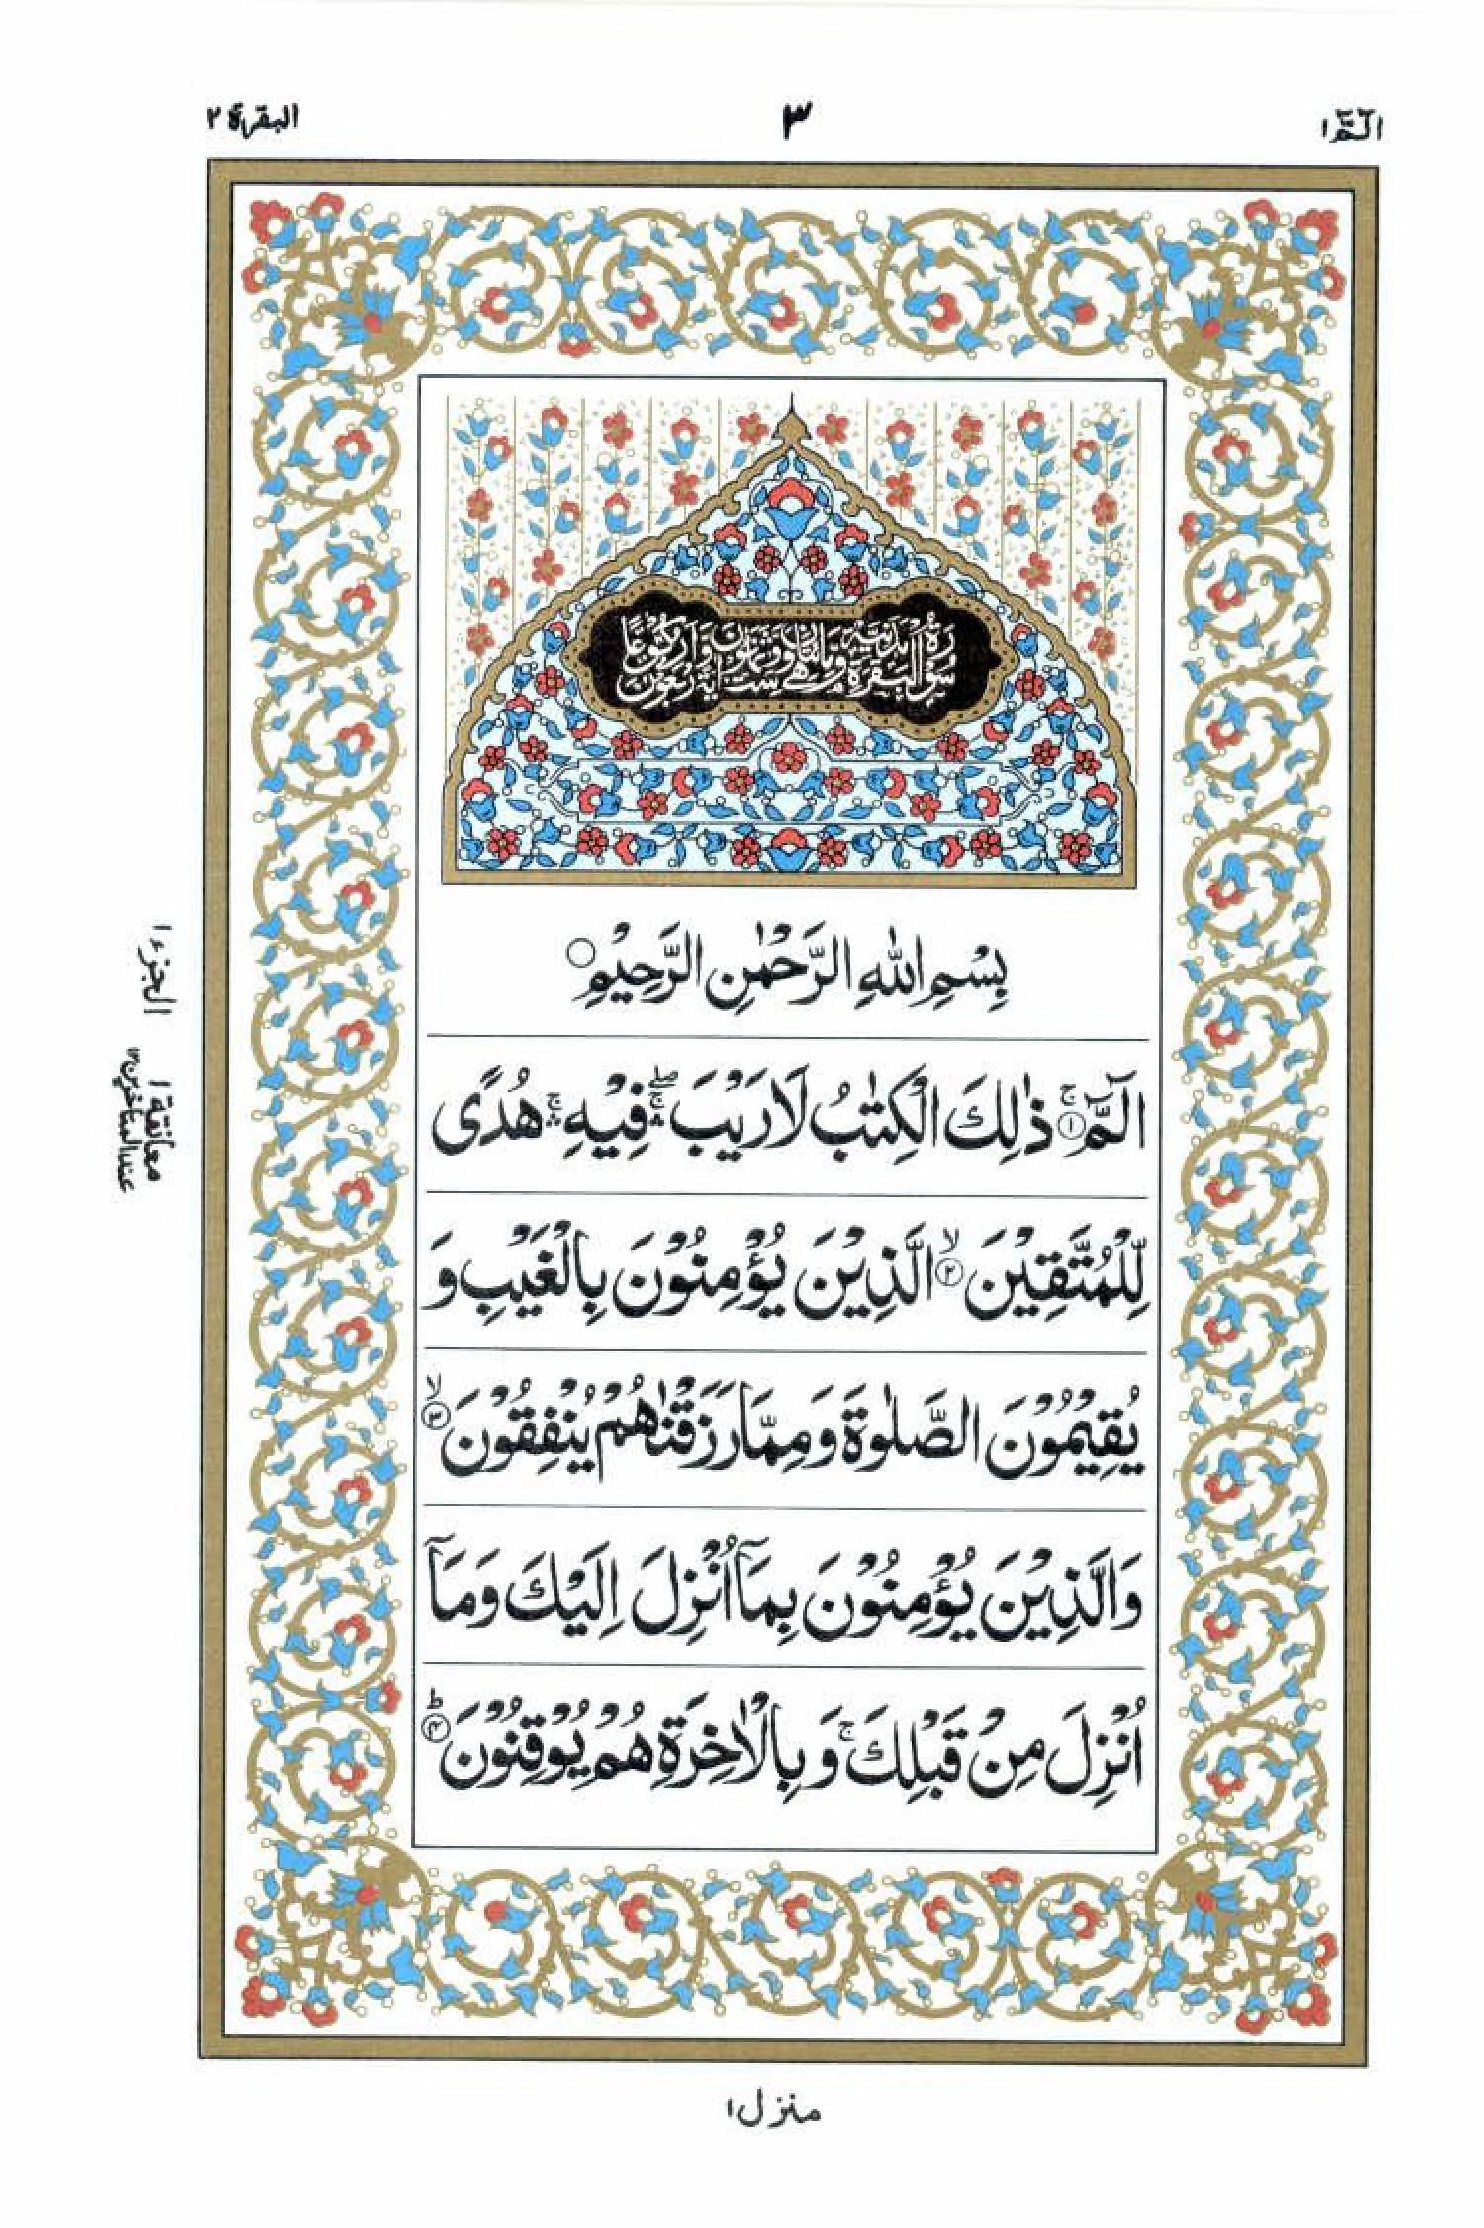 Read 15 Lines Al Quran Part 1 Page No 3, Practice Quran